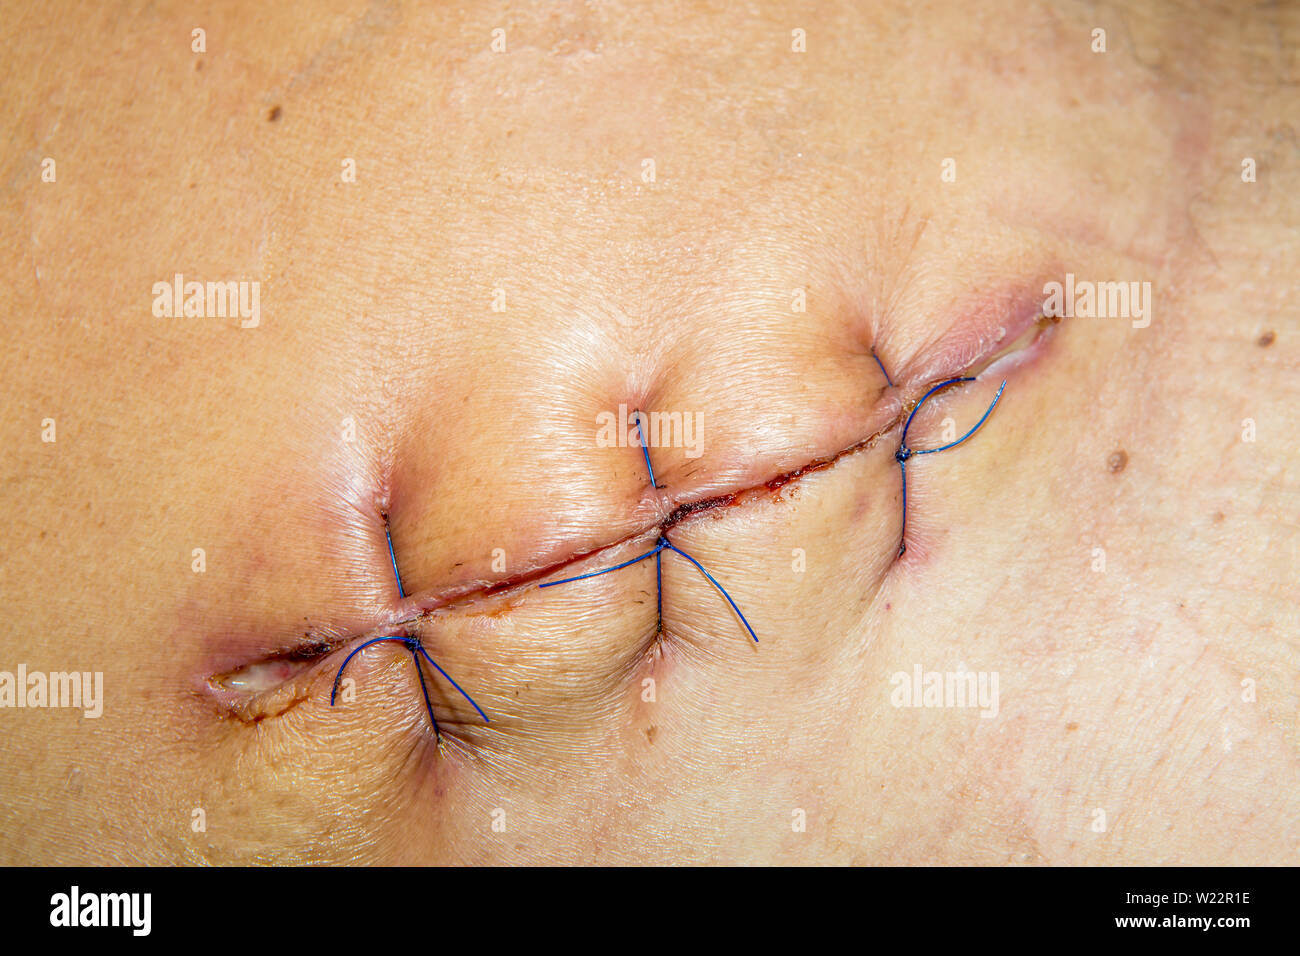 Narbe von der Bedienung naht mit einem blauen Faser am Bein des Patienten  Stockfotografie - Alamy